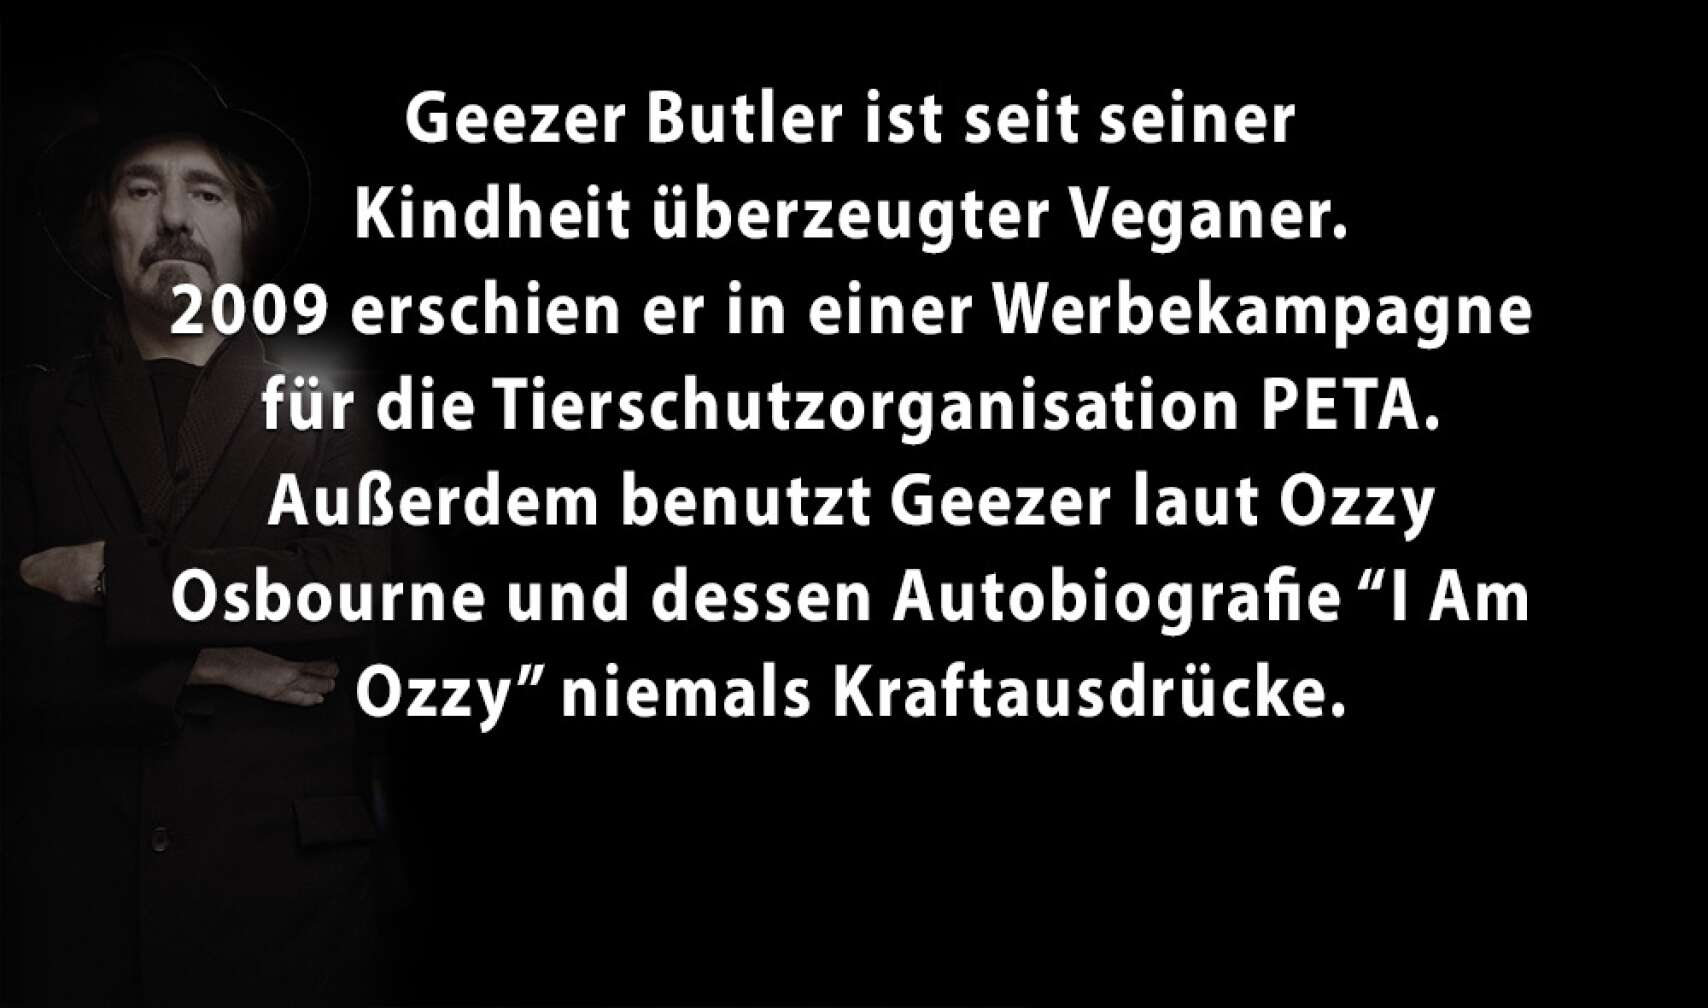 5 Facts über Geezer Butler